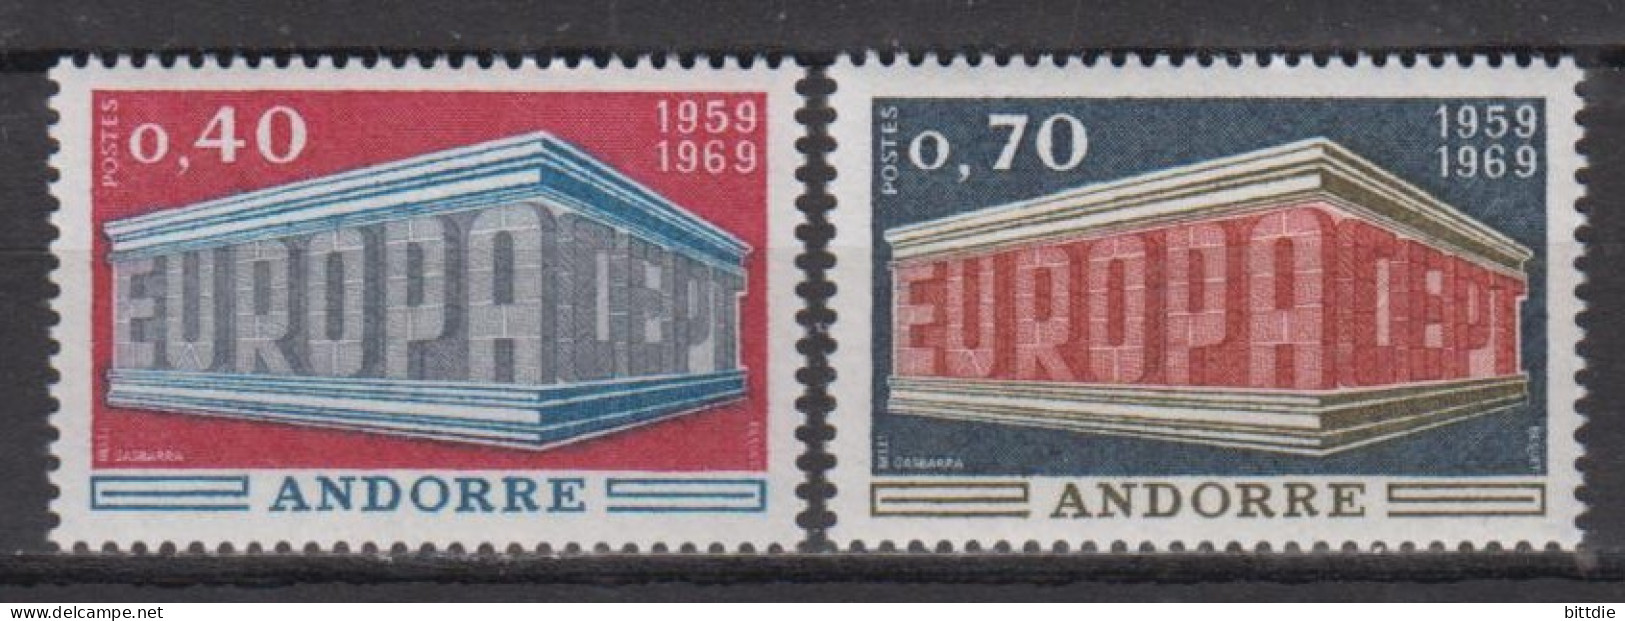 Europa/Cept, Fr. Andorra   214/15 , Xx  (S 1754) - 1969